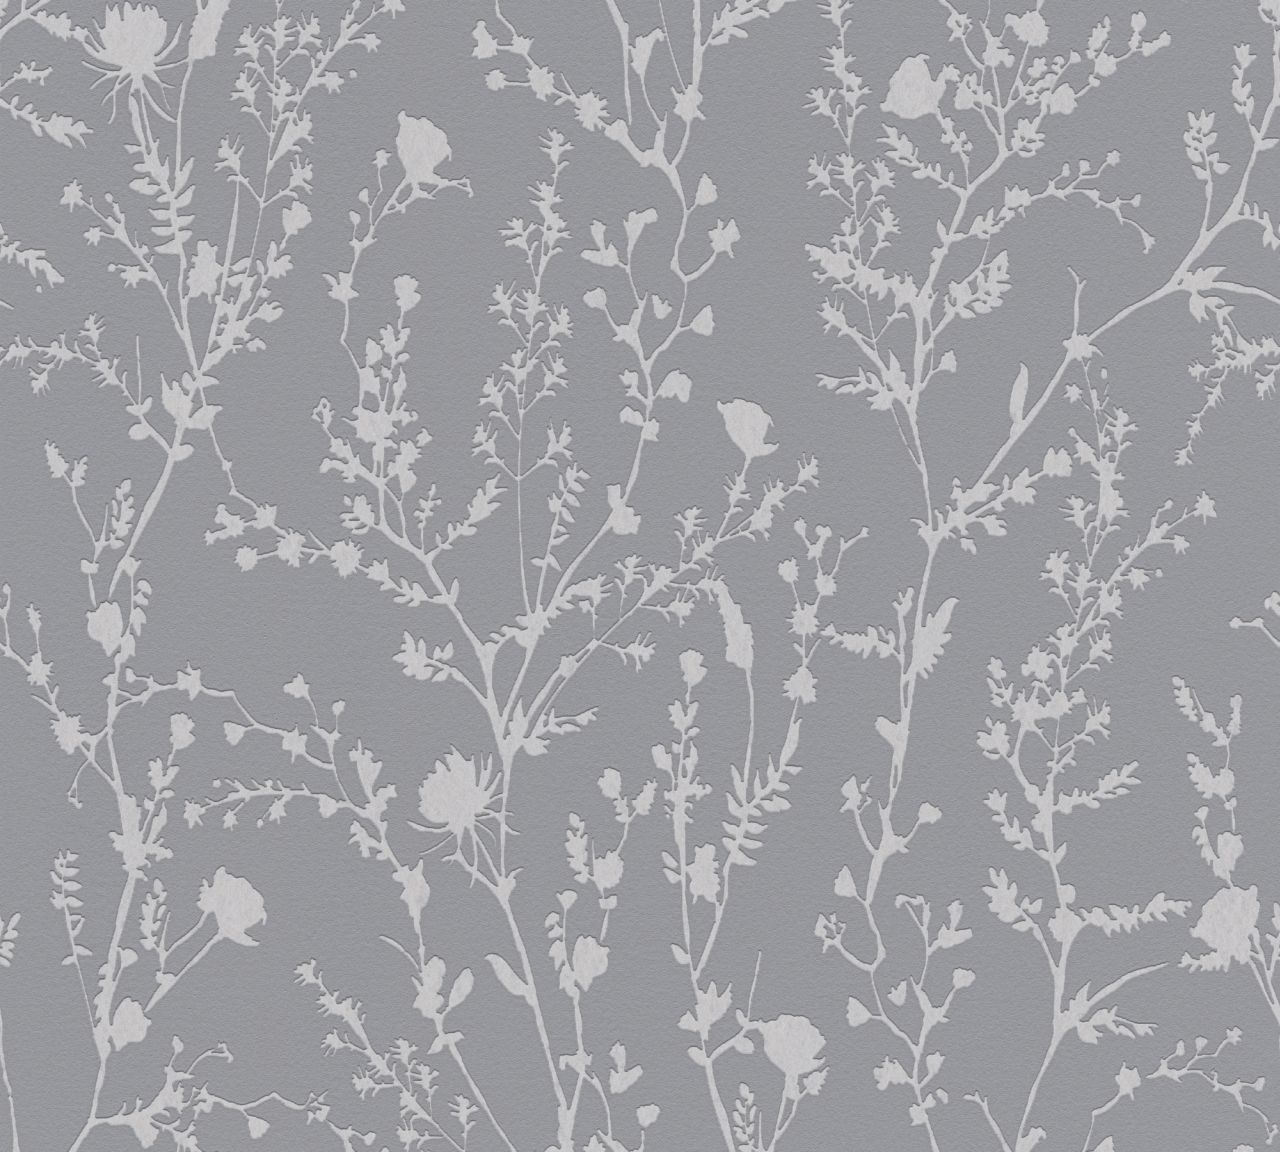 A.S. Création Vliestapete Casual Living Blumen Grau Hintergrund matt, Muster schimmernd glatt